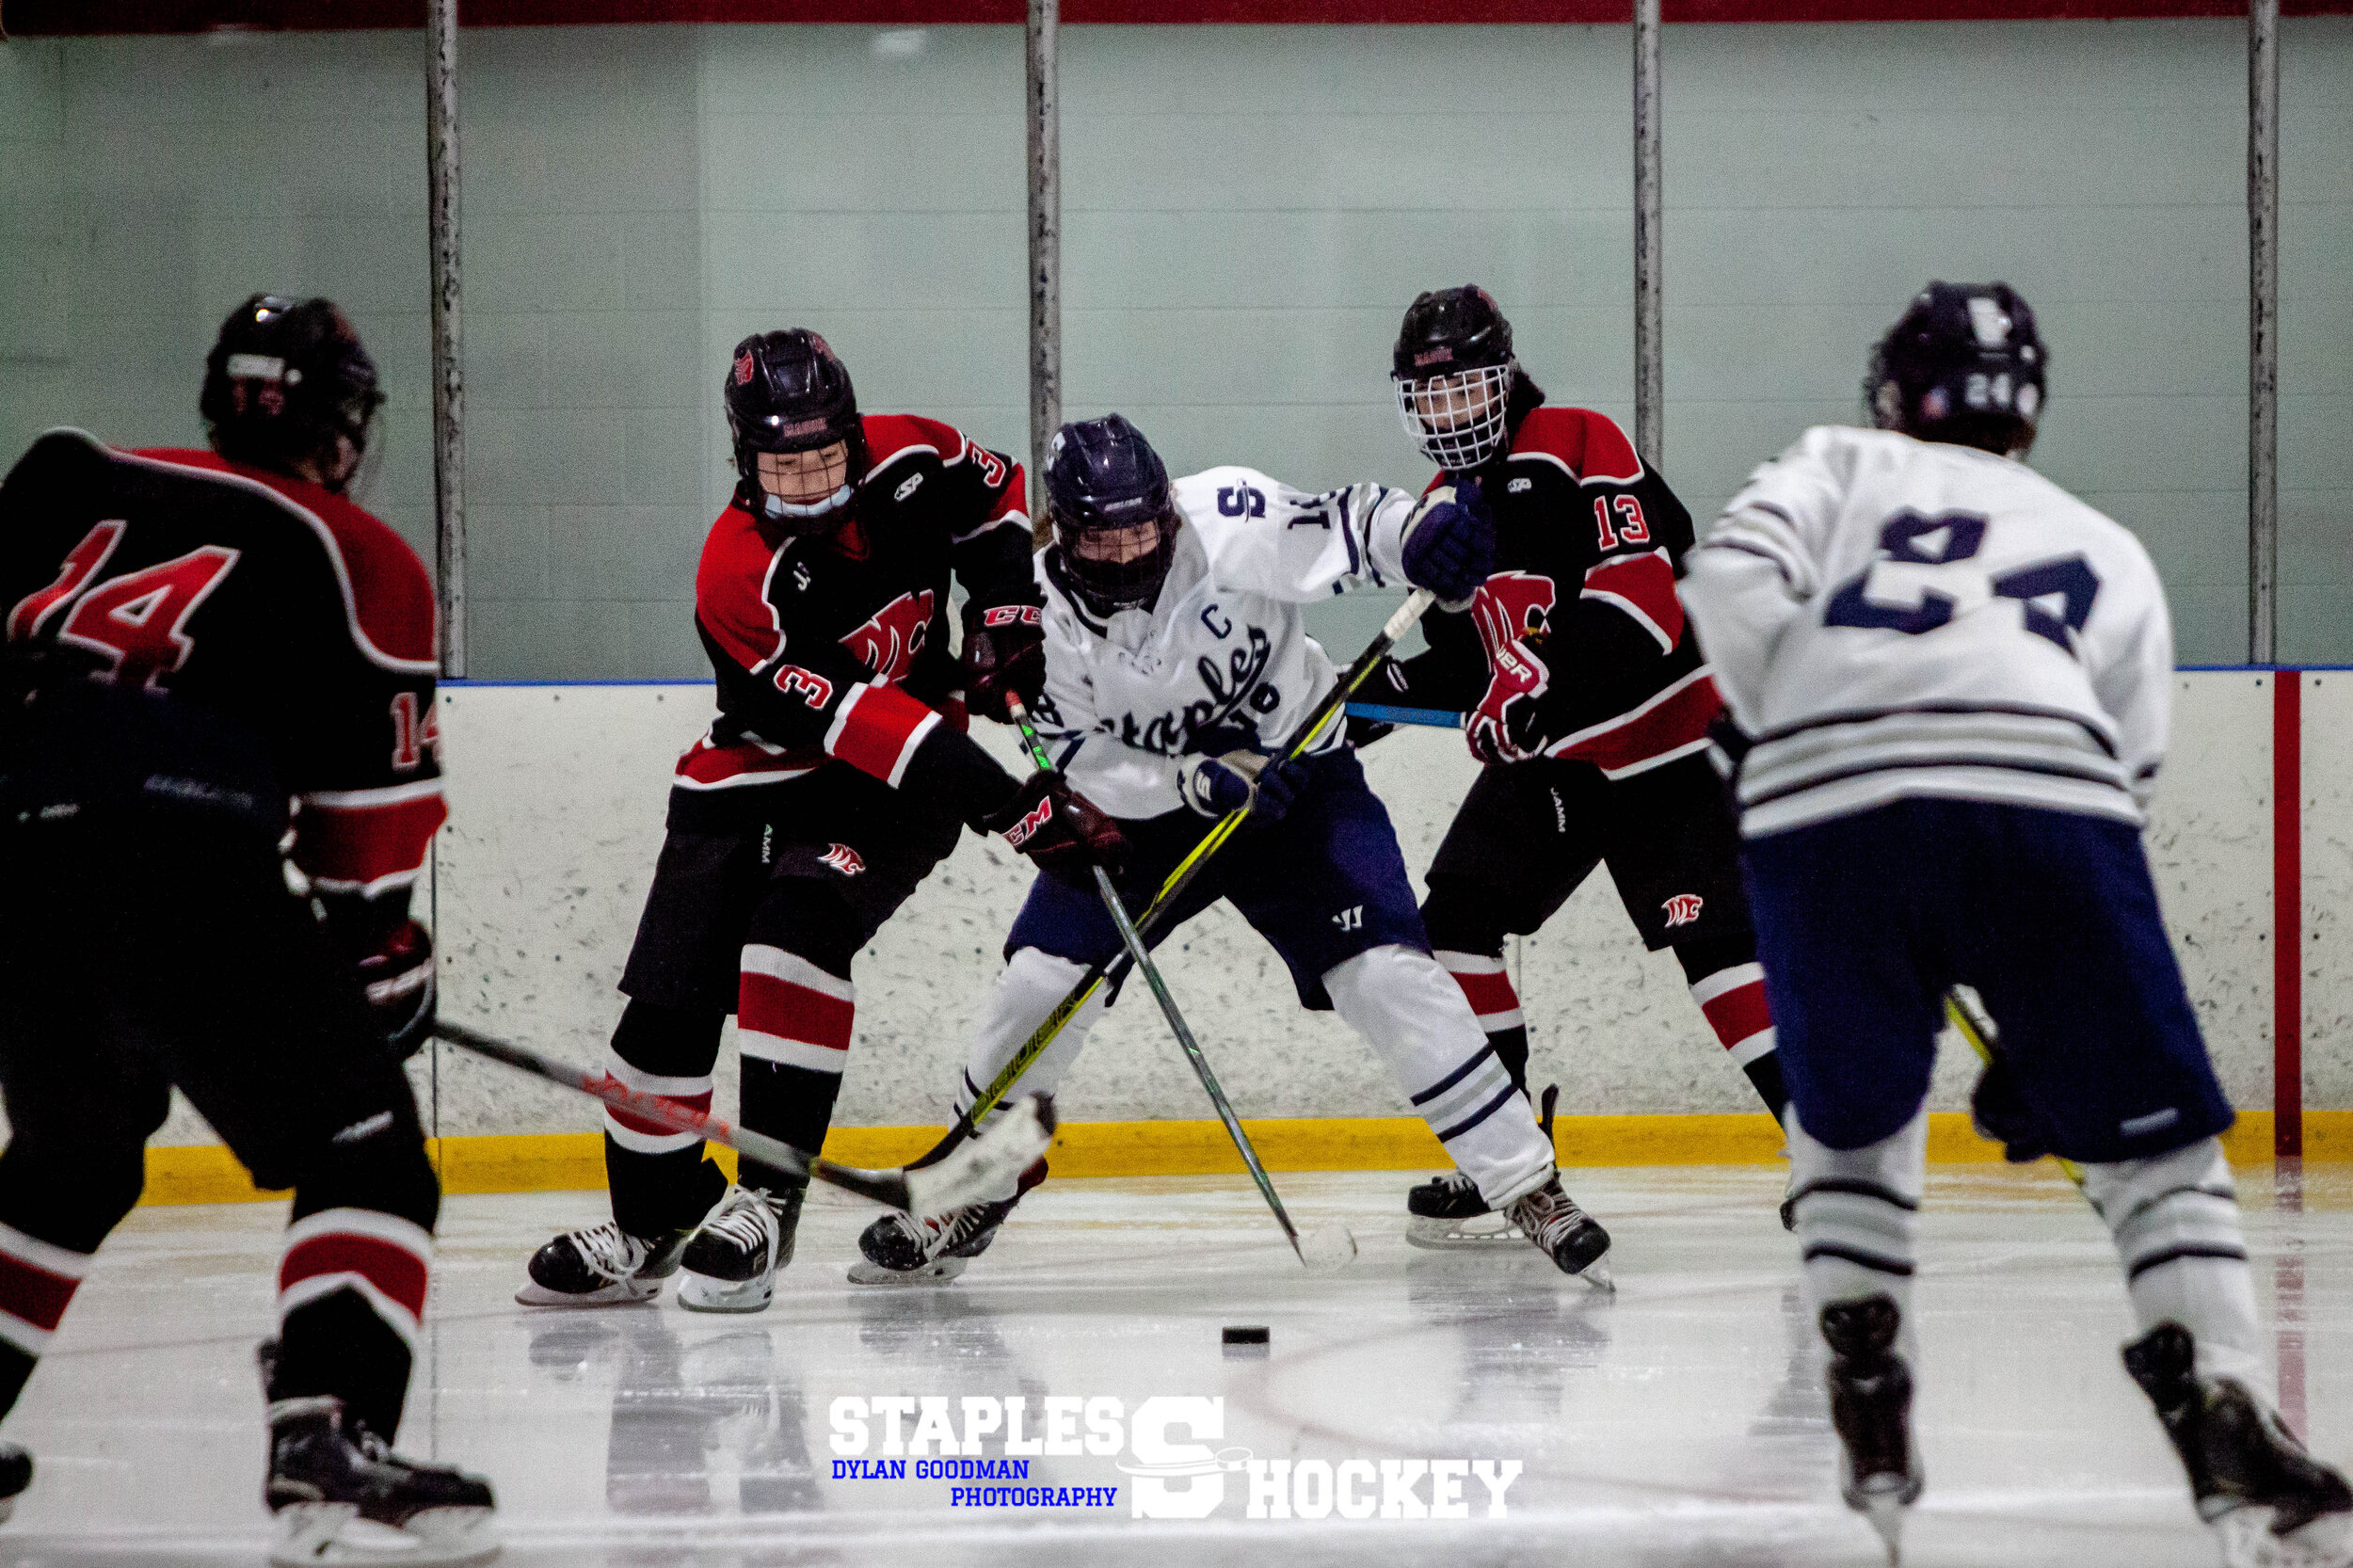 138-Staples Varsity Boys Hockey vs. Masuk - February 27, 2021 - Dylan Goodman Photography.jpg